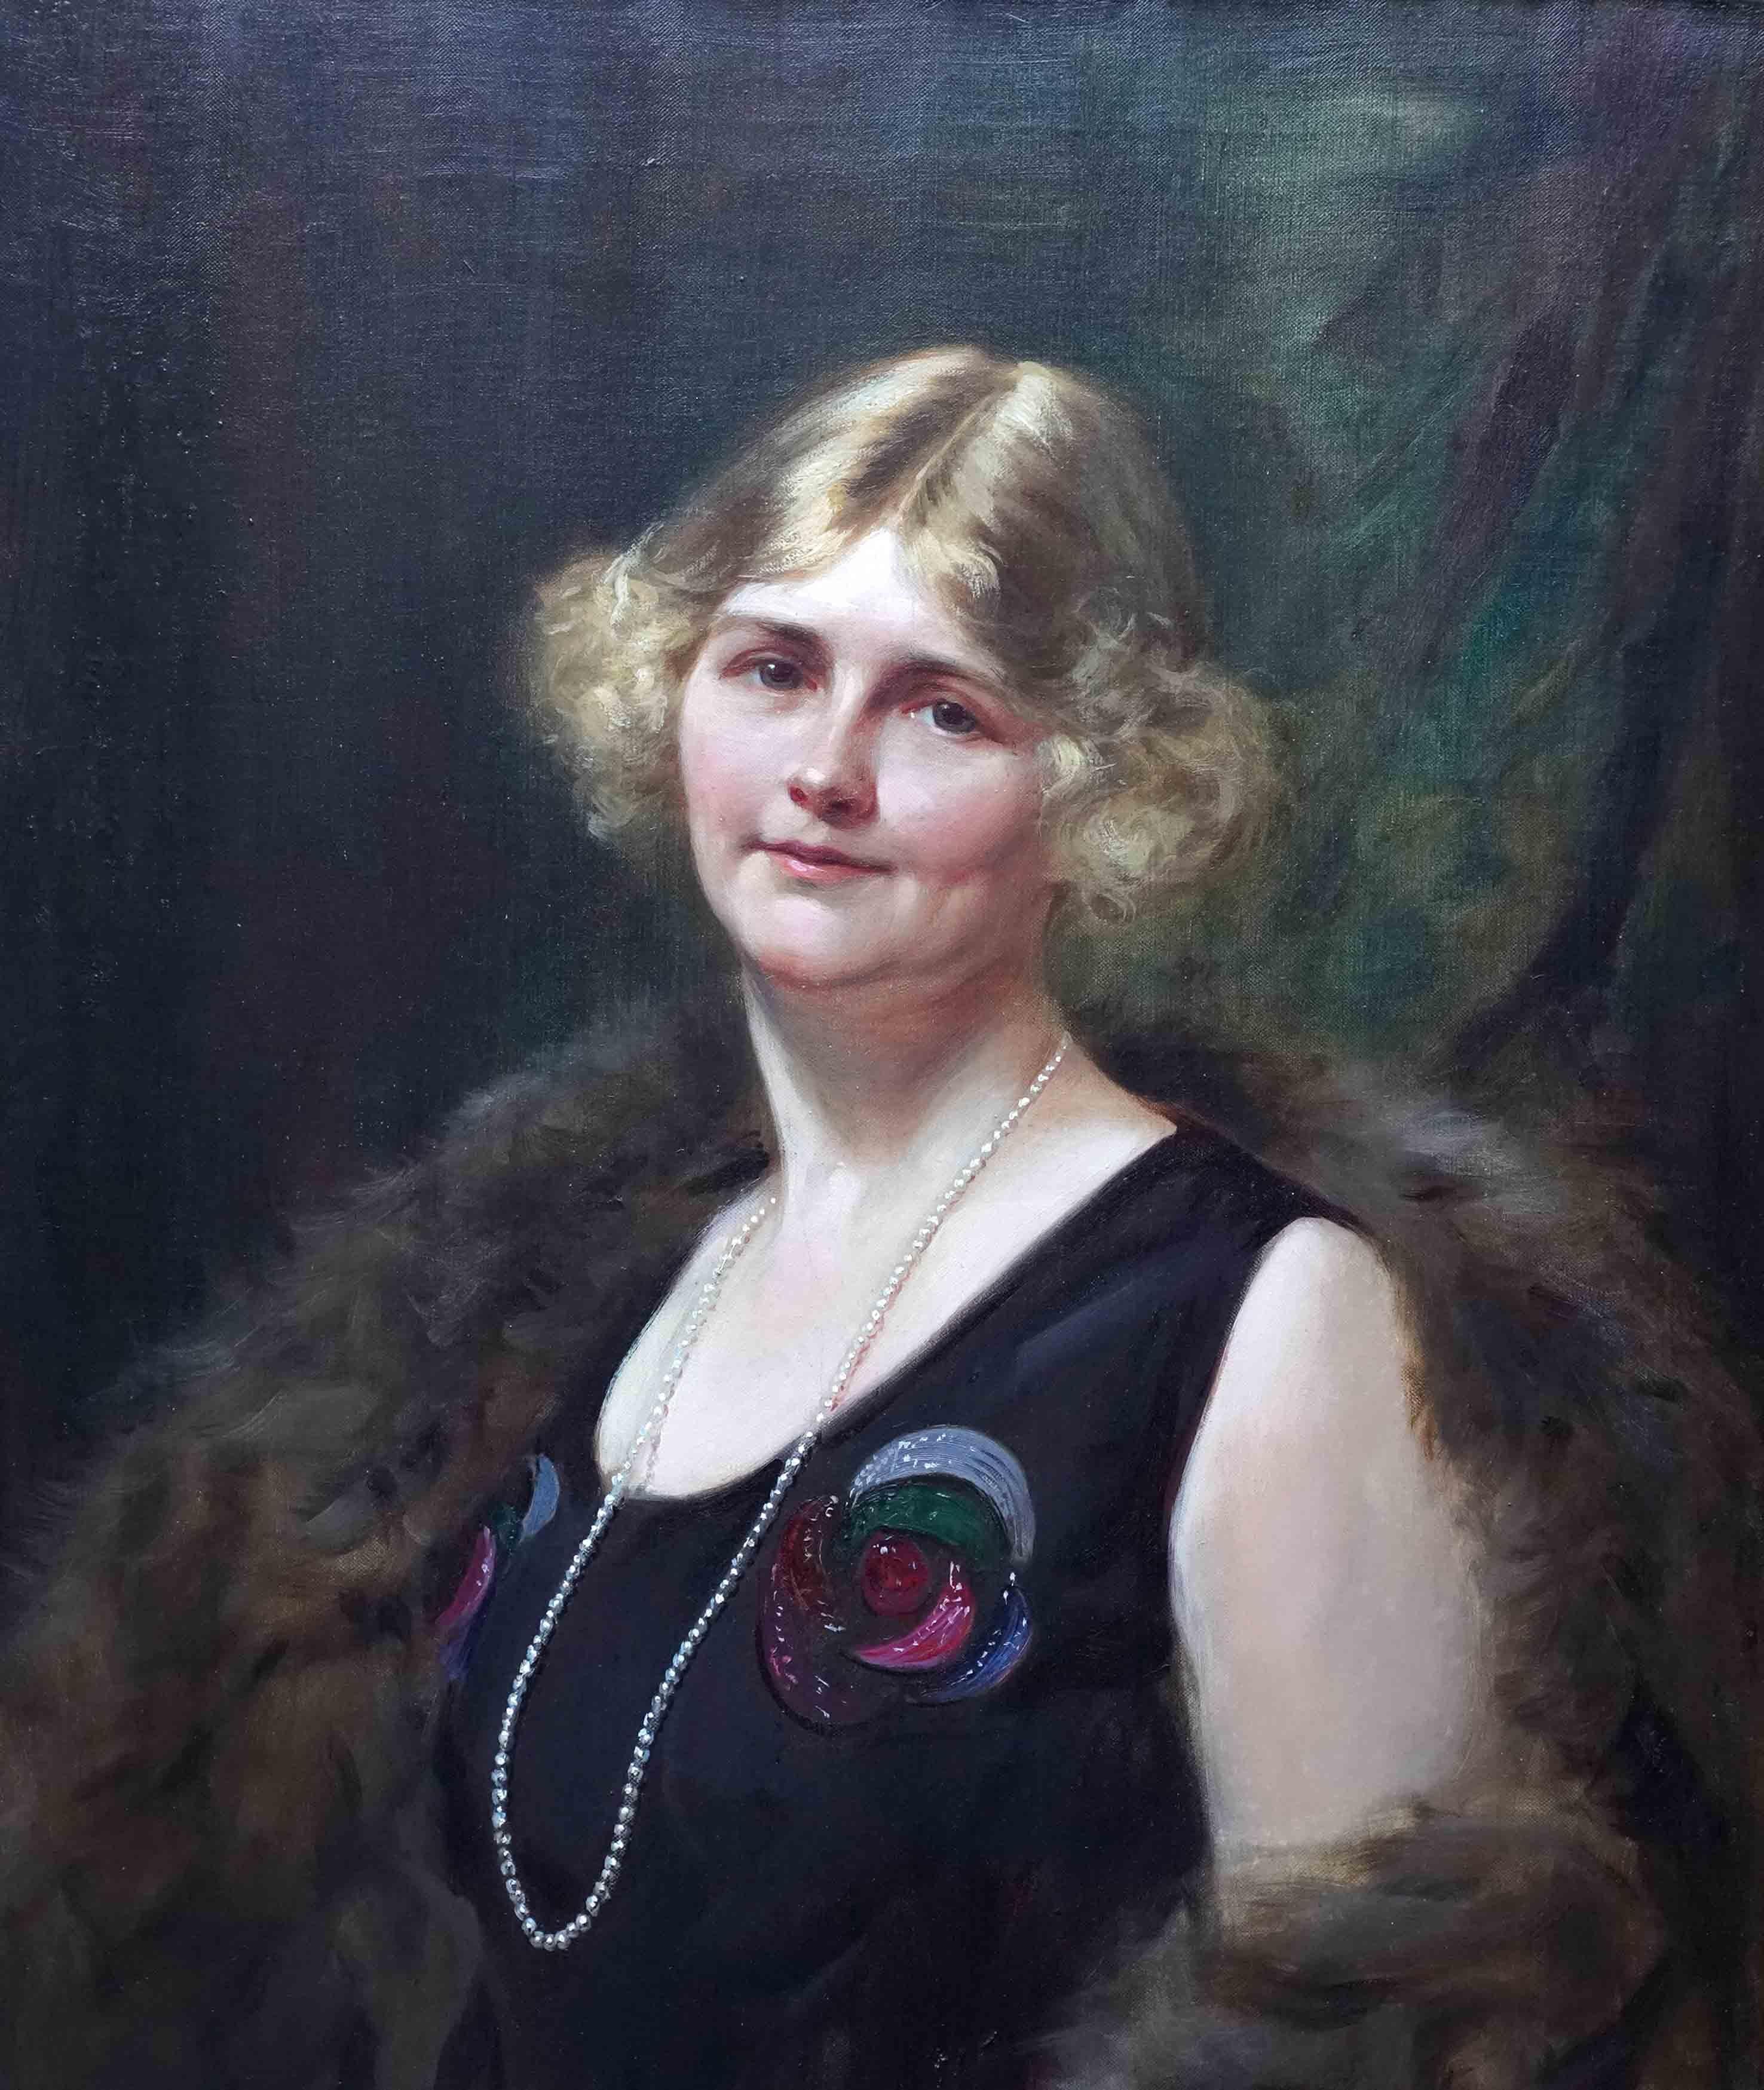 Portrait d'une femme Art déco britannique des années 1920 - Painting de Leon Sprinck